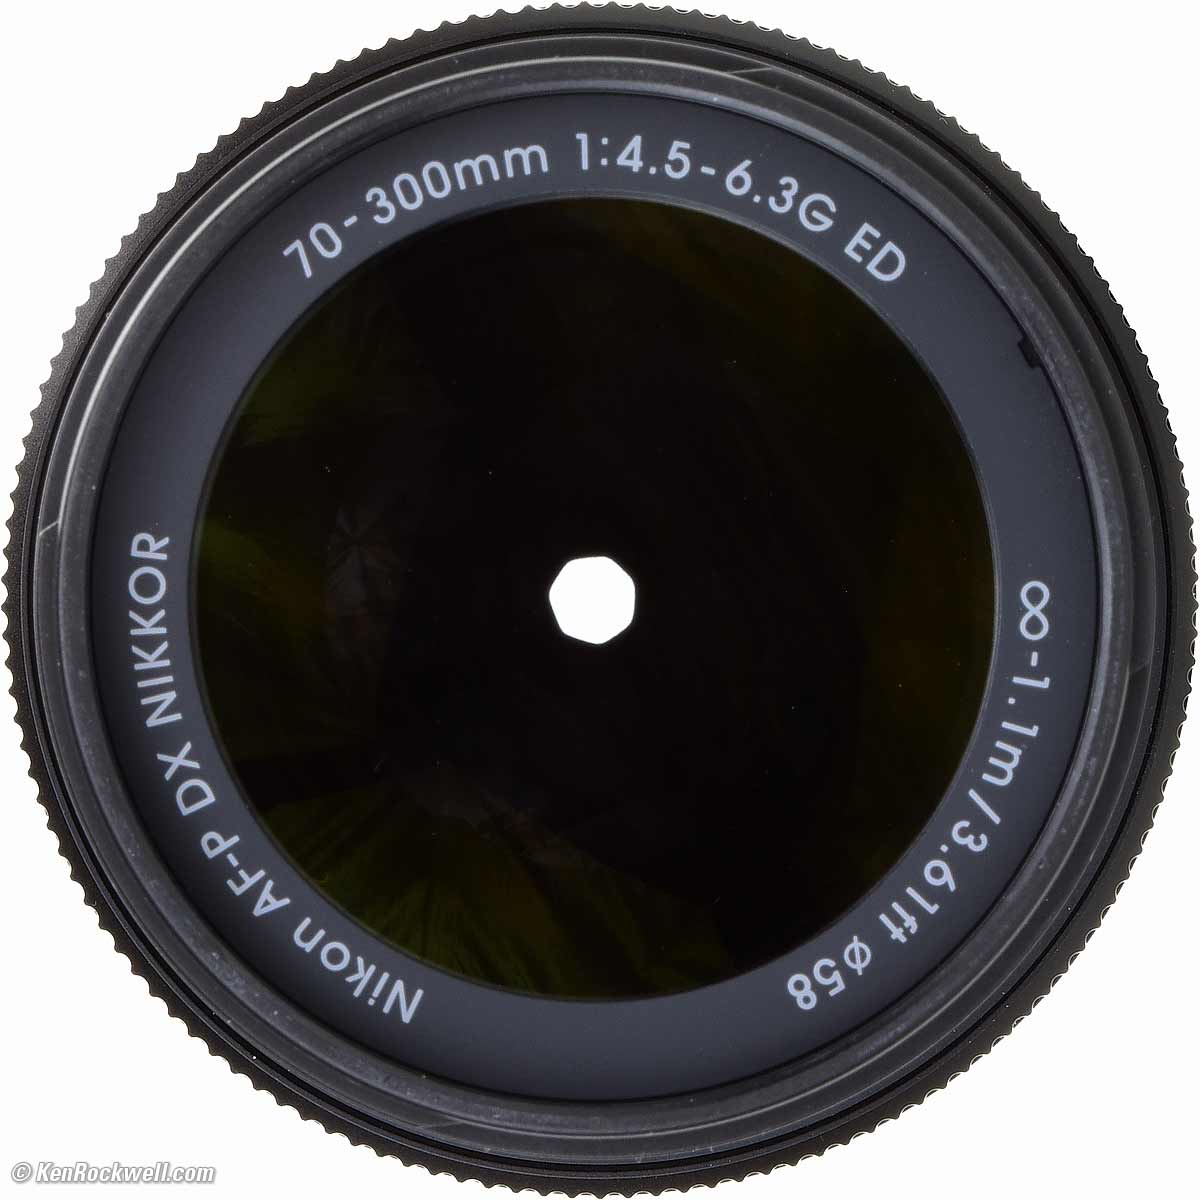 Nikon 70-300mm DX AF-P